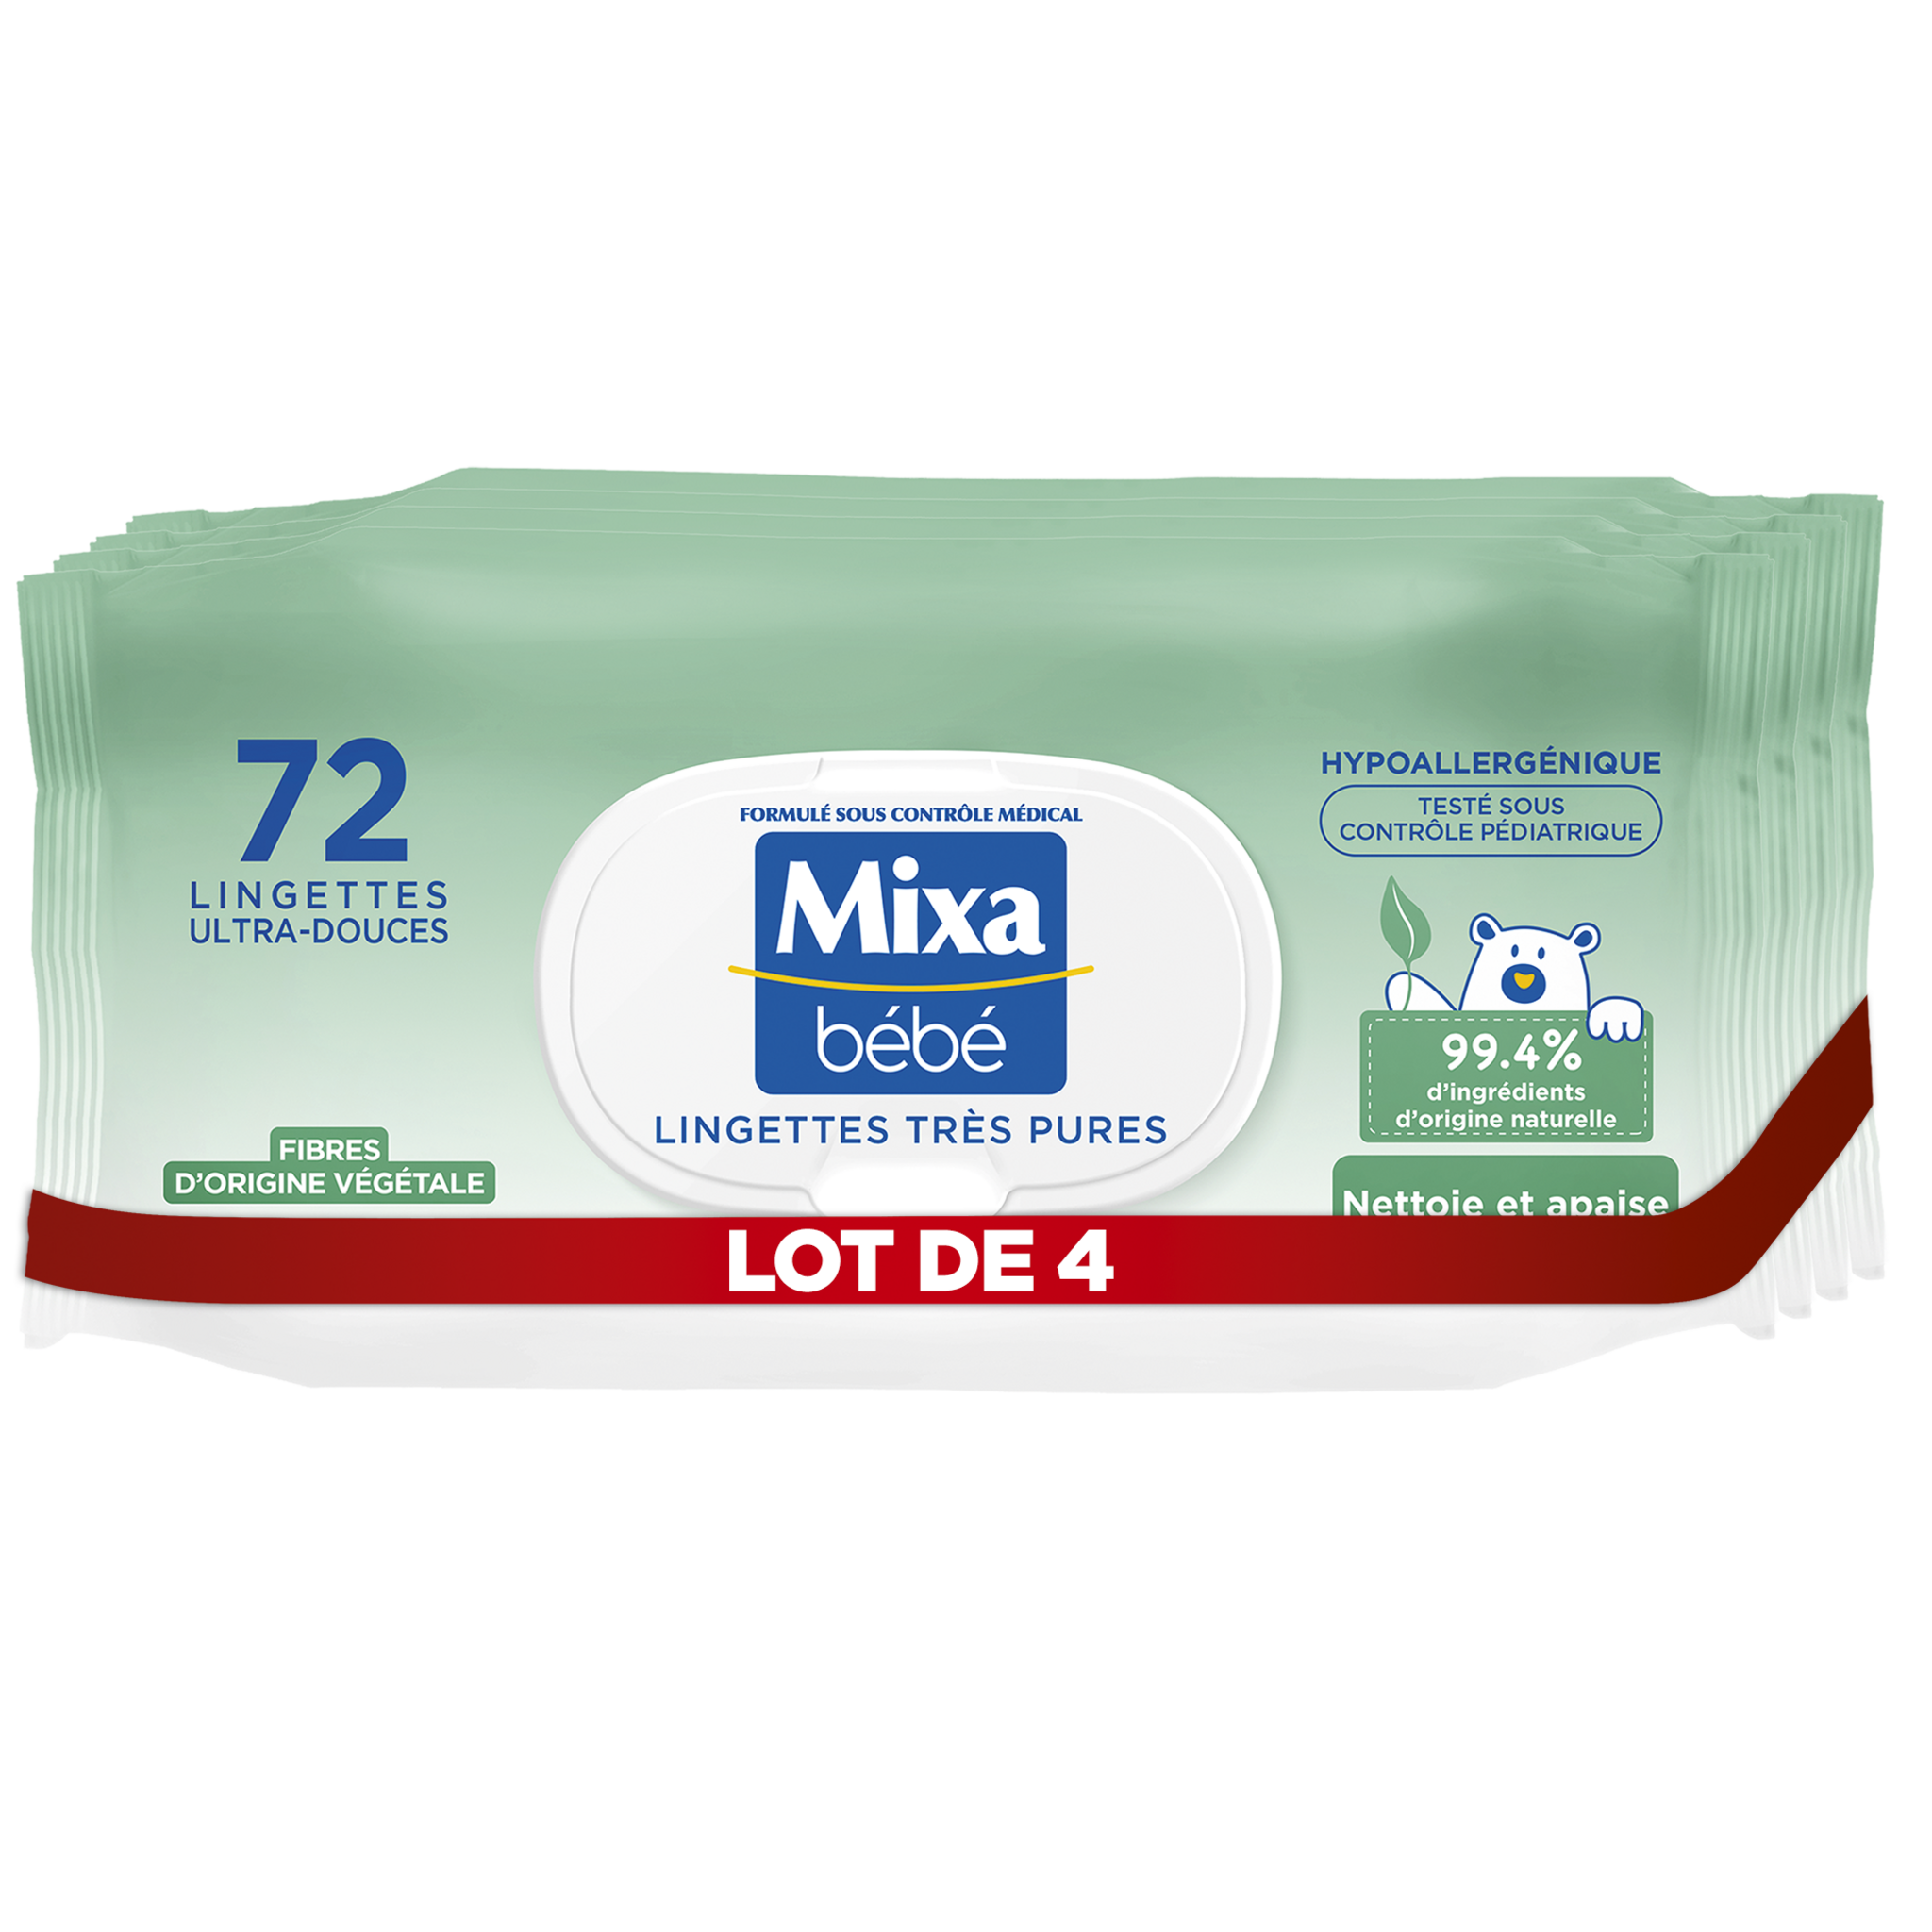 MIXA BEBE Lingettes très pures ultra douces fibres végétales 4x72 lingettes  pas cher 